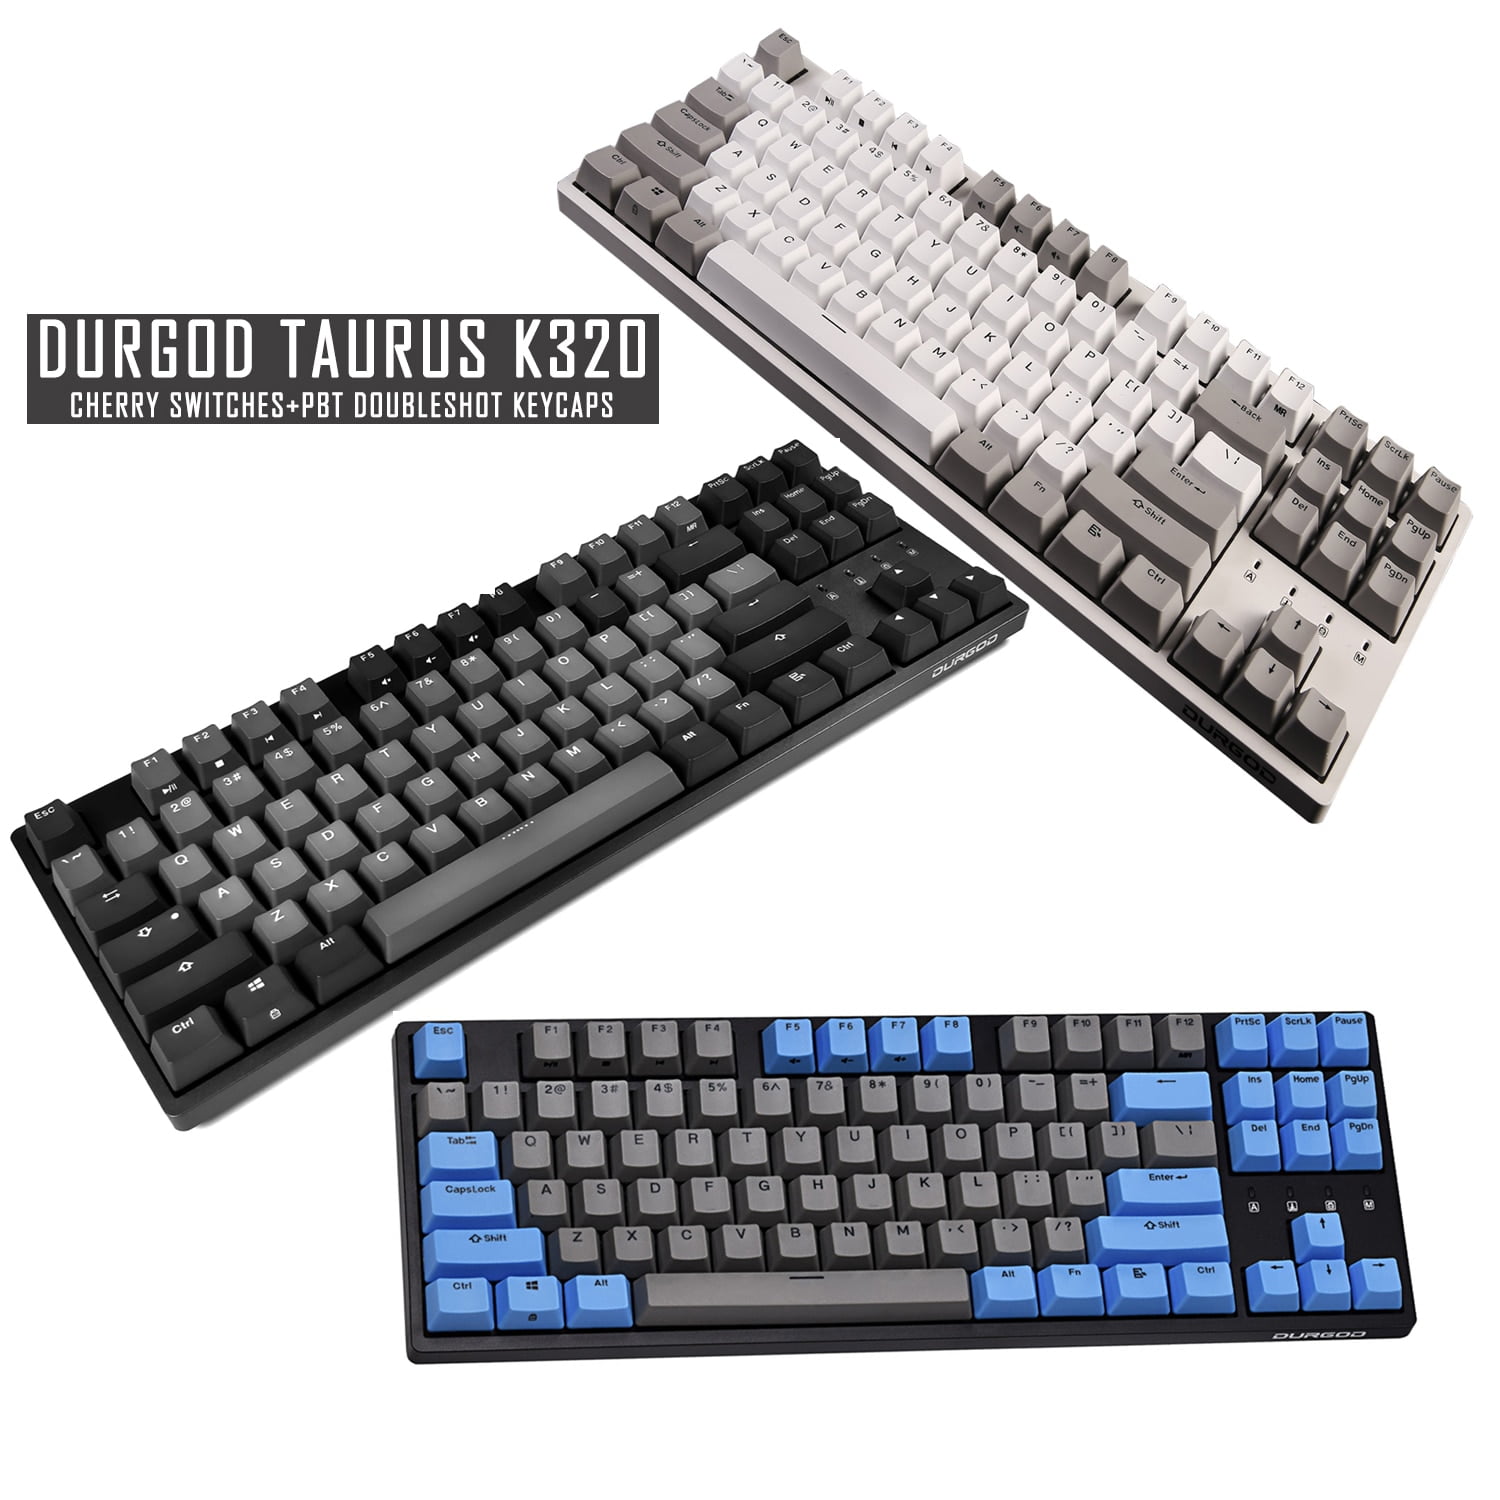 Durgodk 320 Taurus Mechanical Keyboard Cherry MX Switches